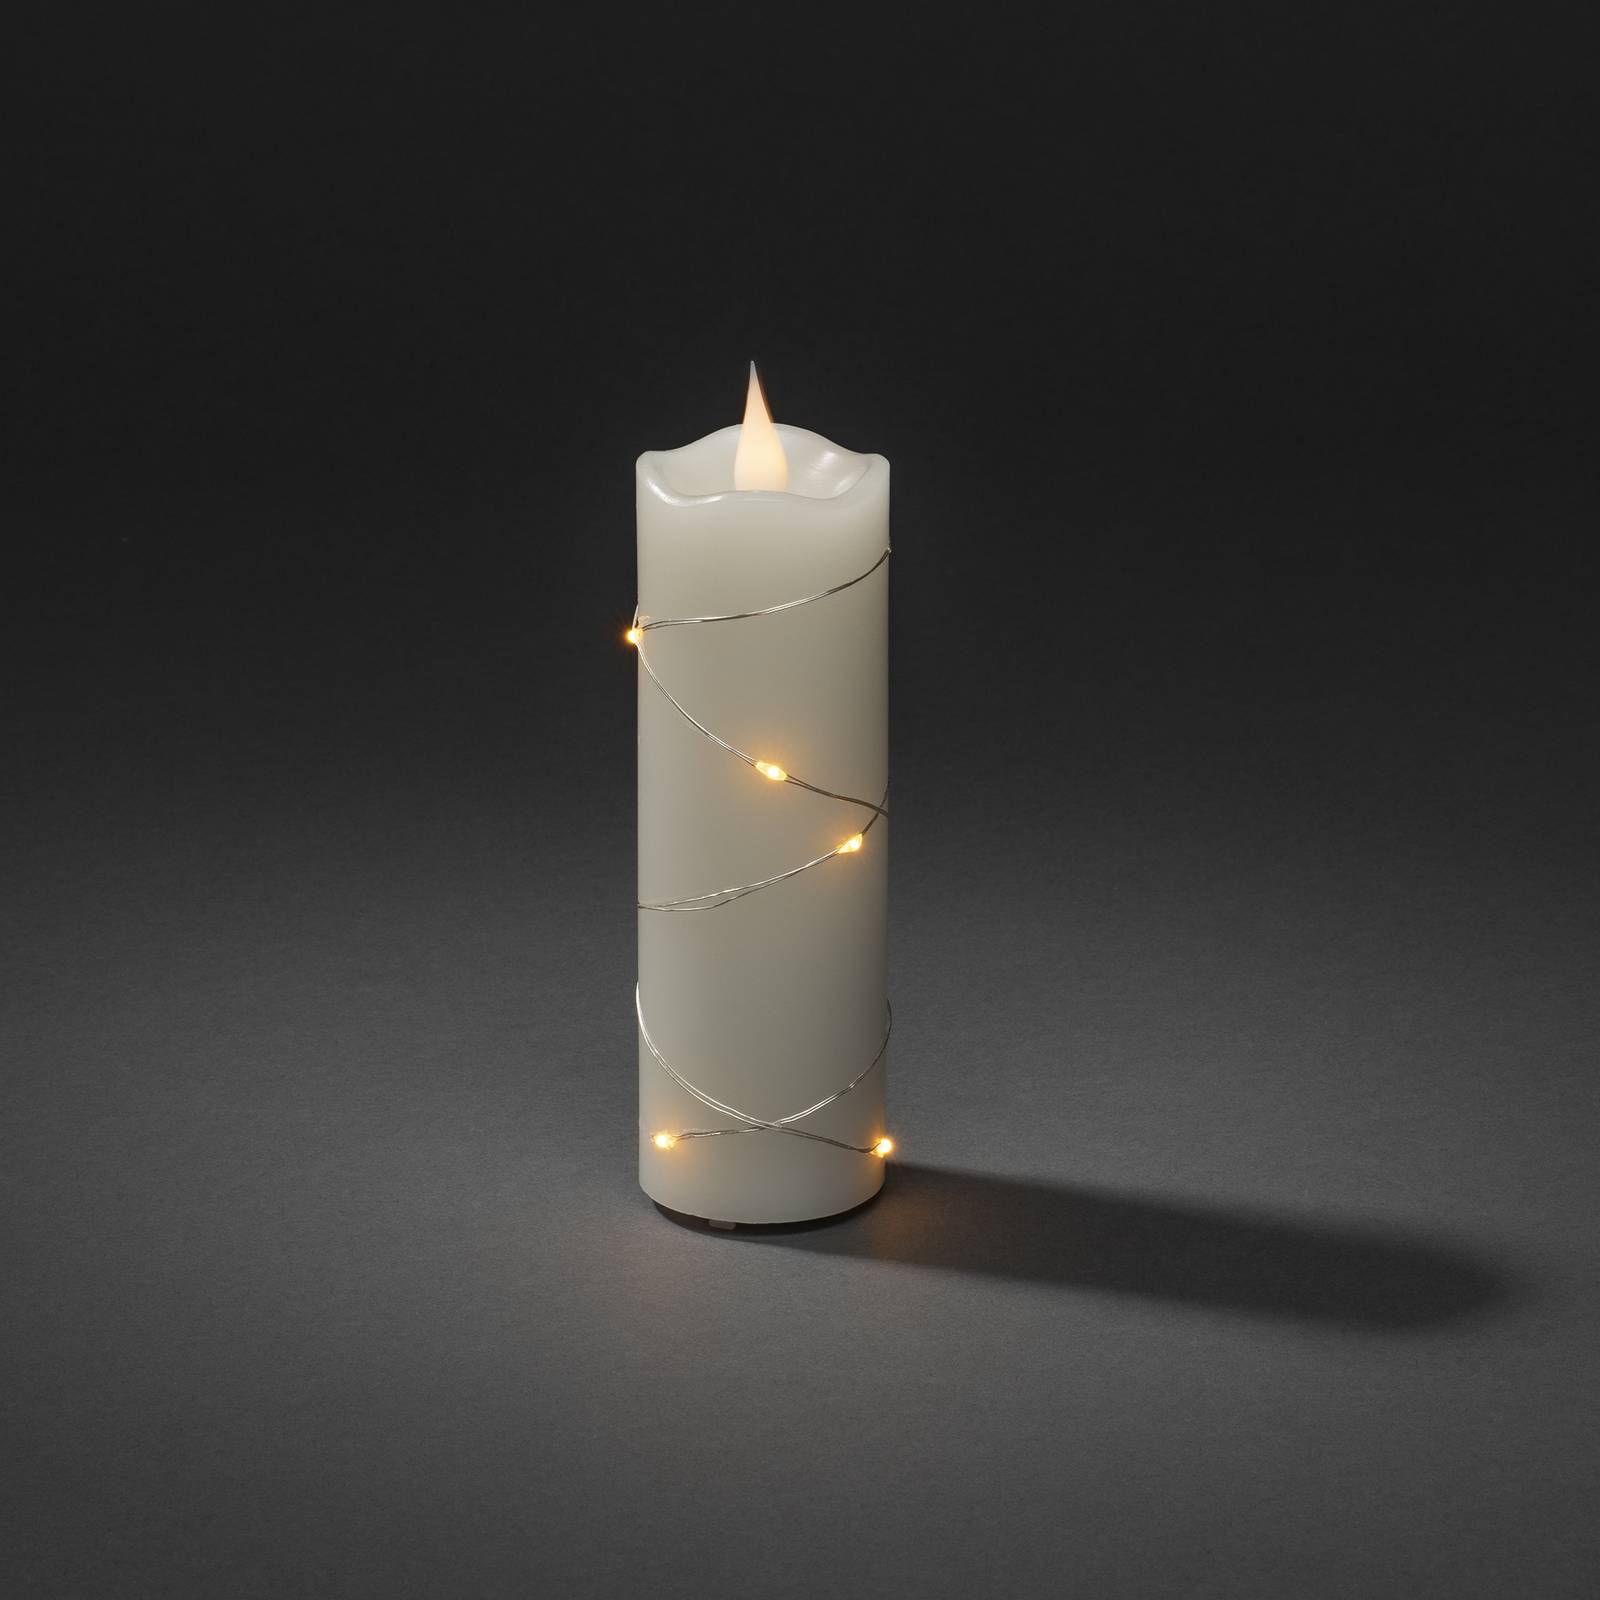 LED vosková sviečka krémová farba jantárová 15,2 cm